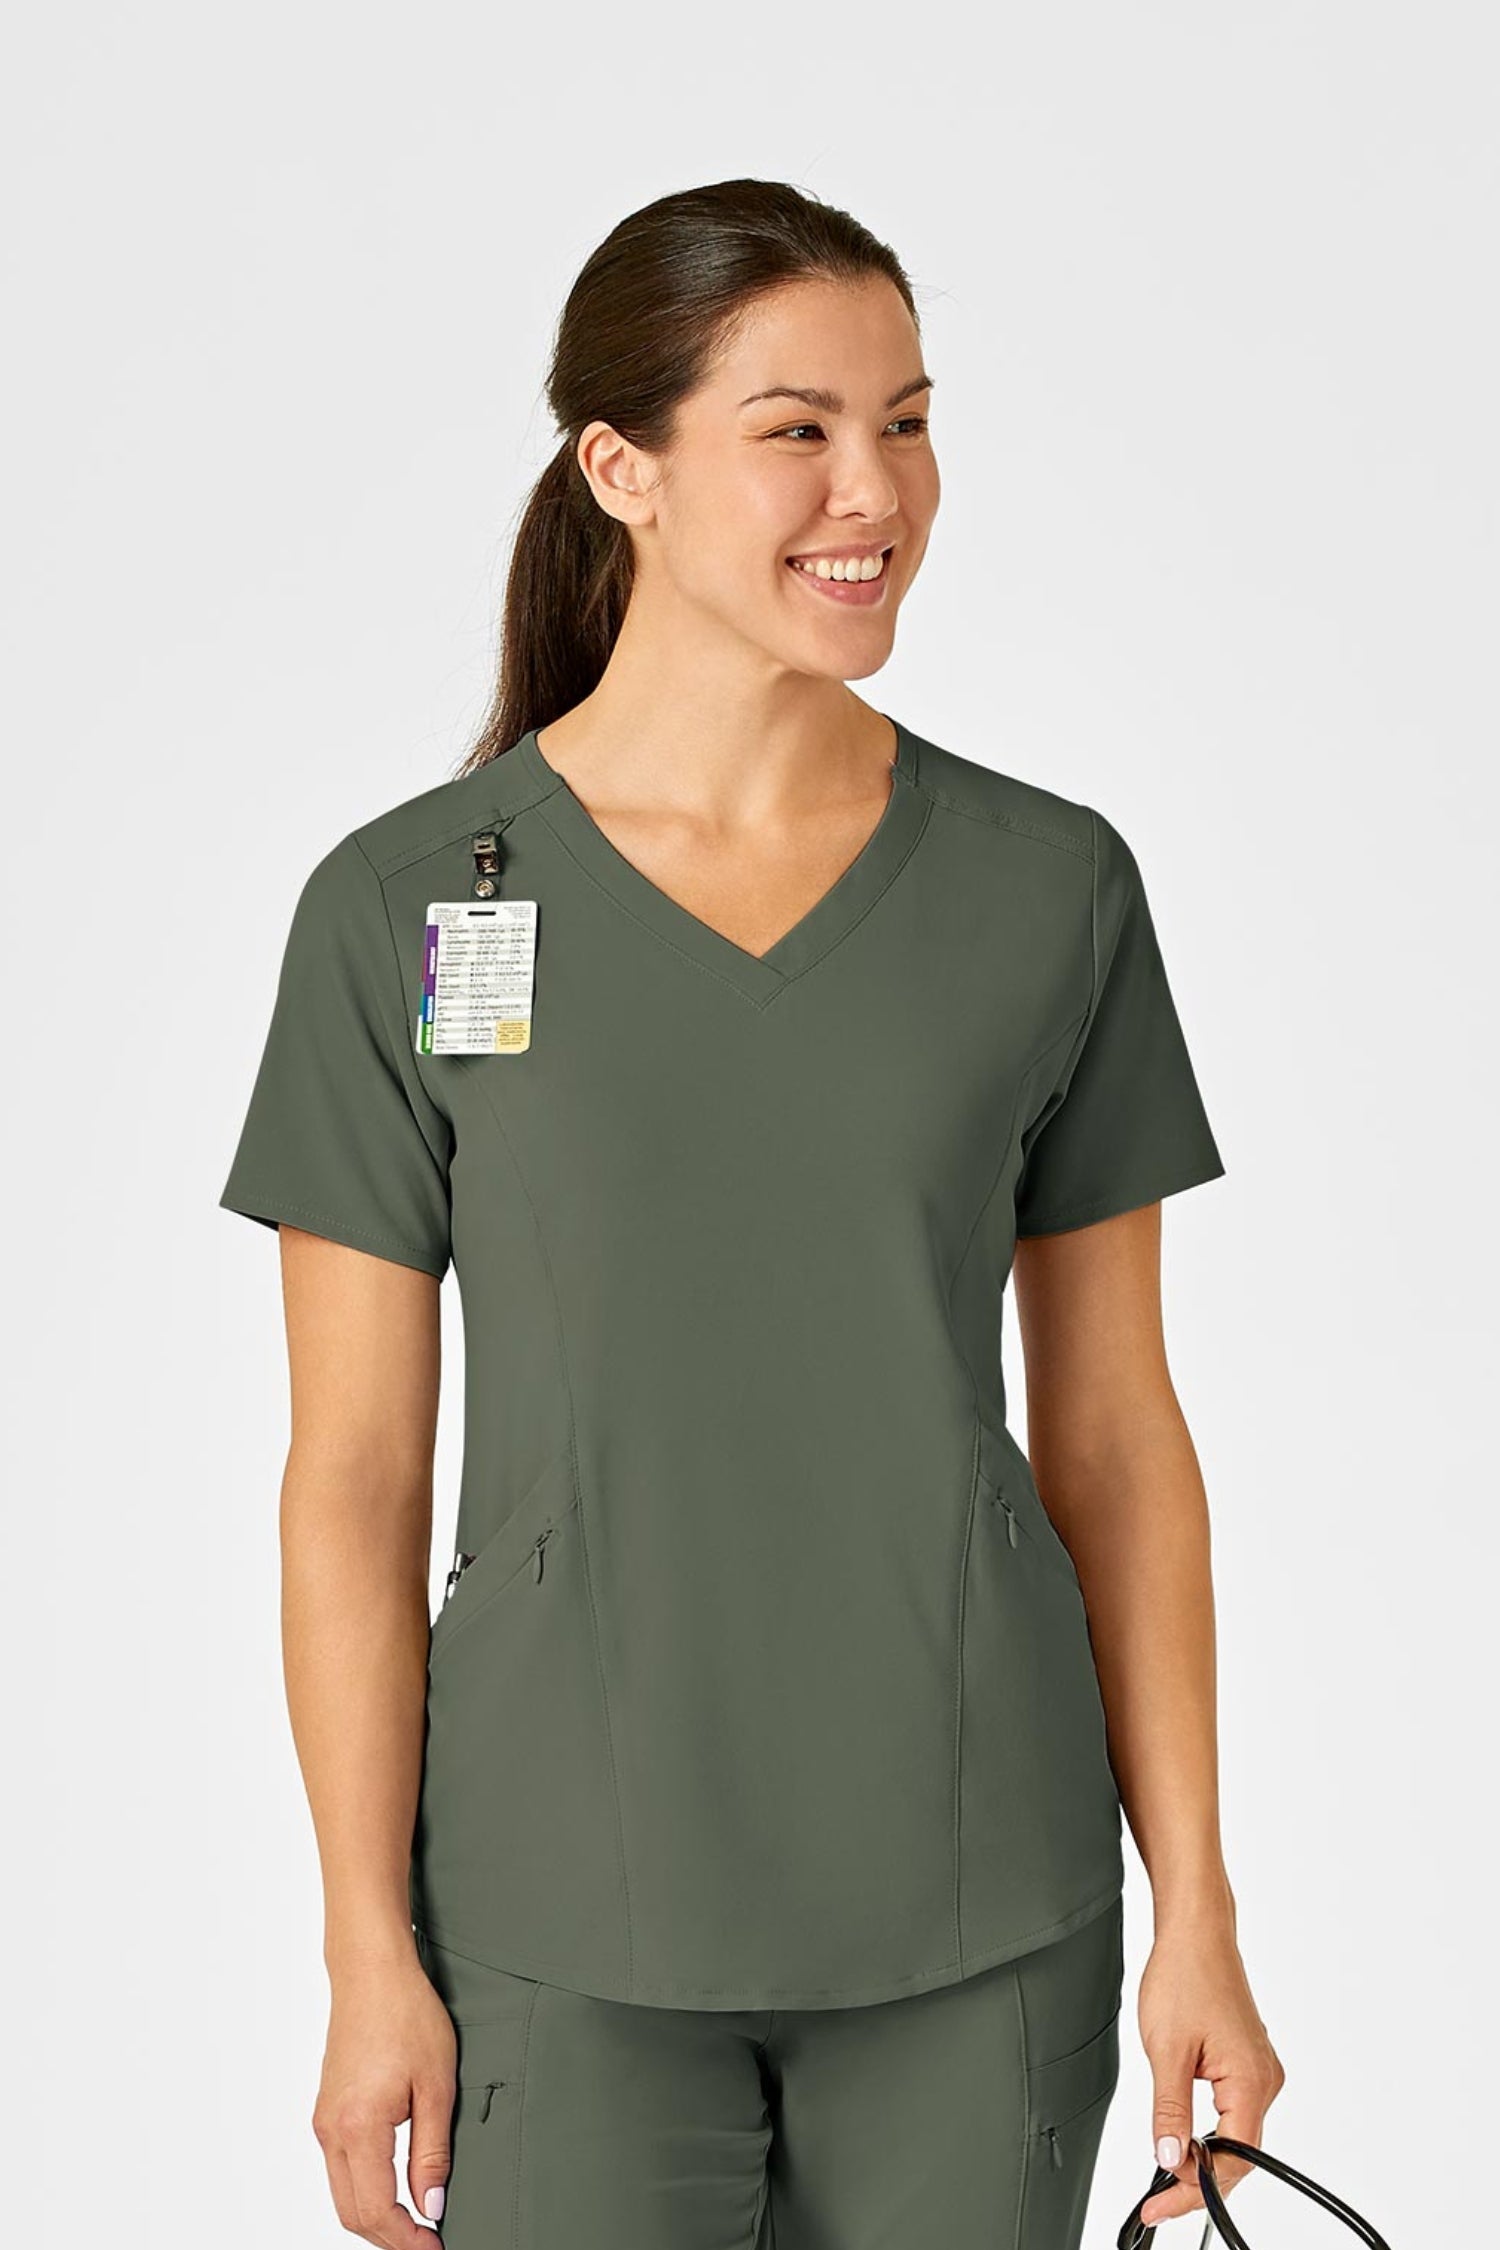 Femme en tenue médicale verte olive avec poches à fermeture polyester spandex